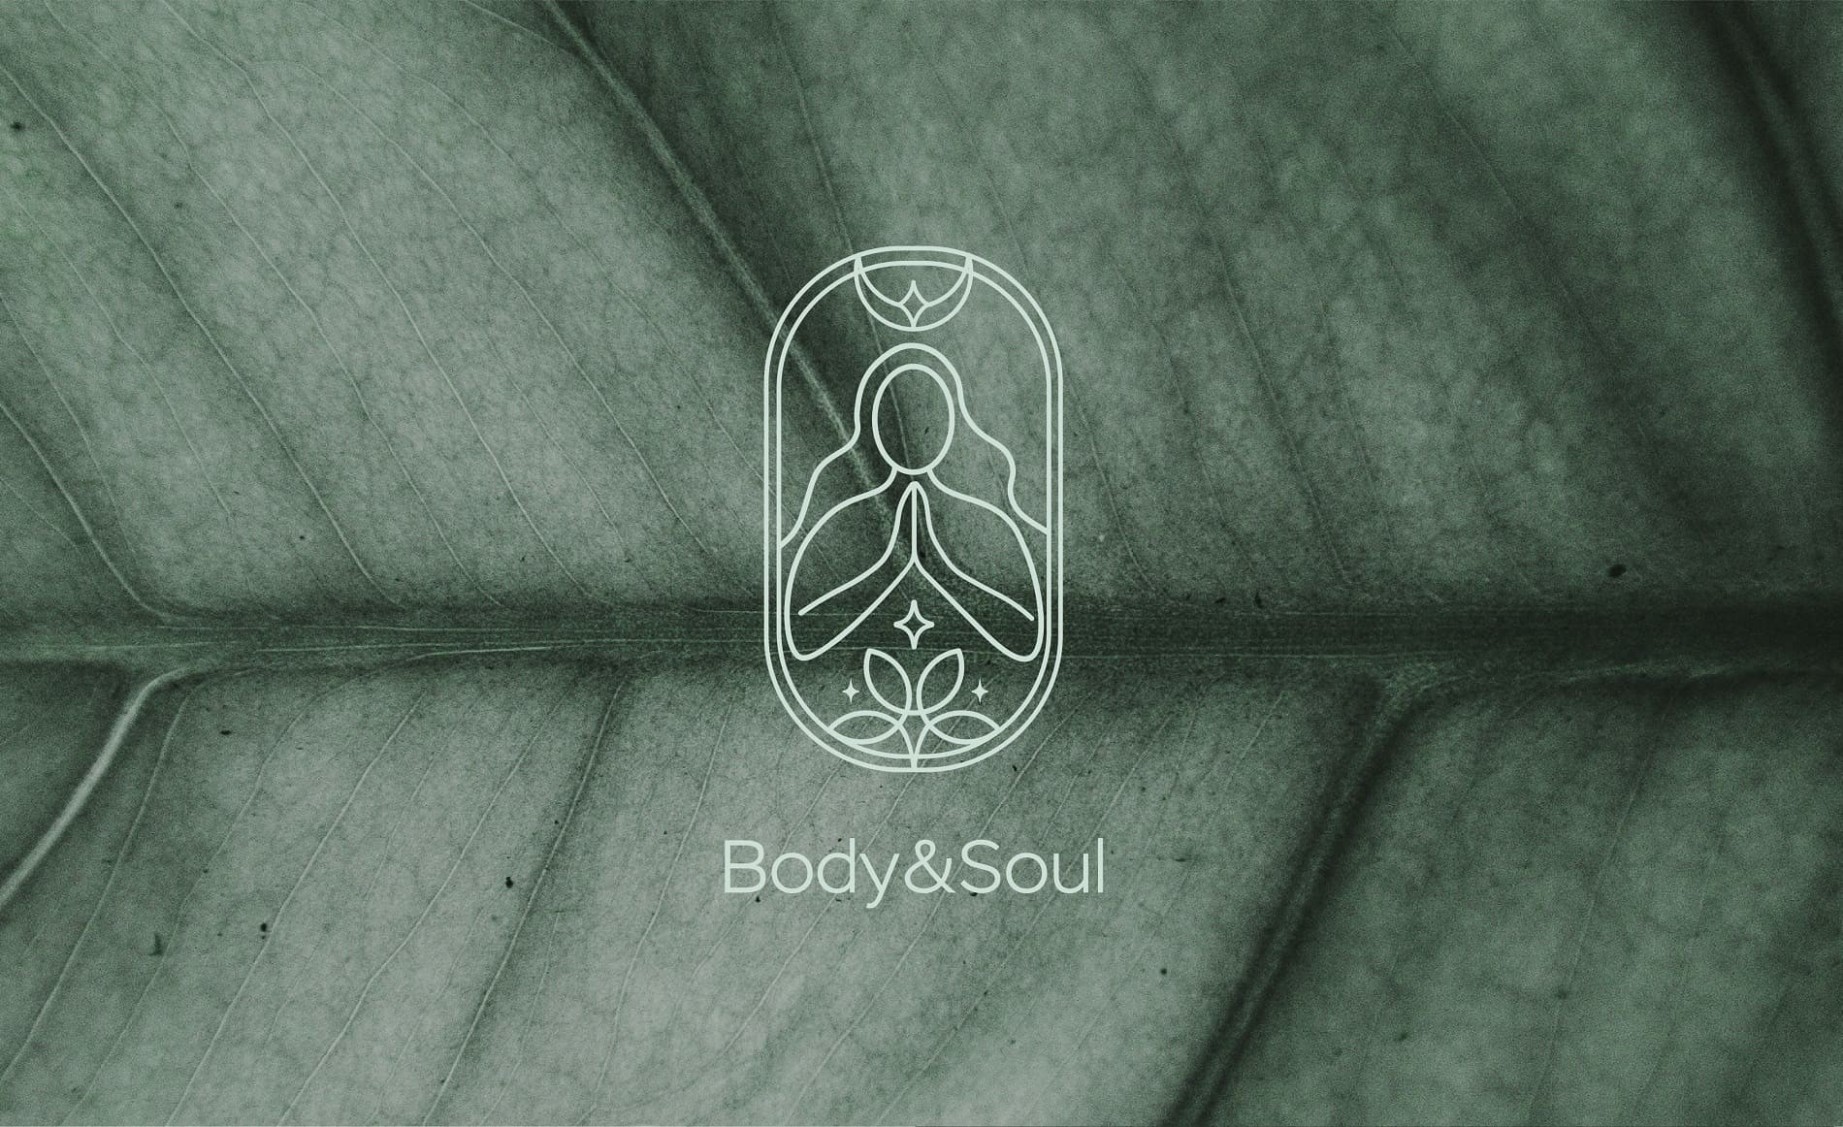 Фото №2: Body&Soul - Разработка логотипа и создание бренда в студии брендинга Rocketmen Agency